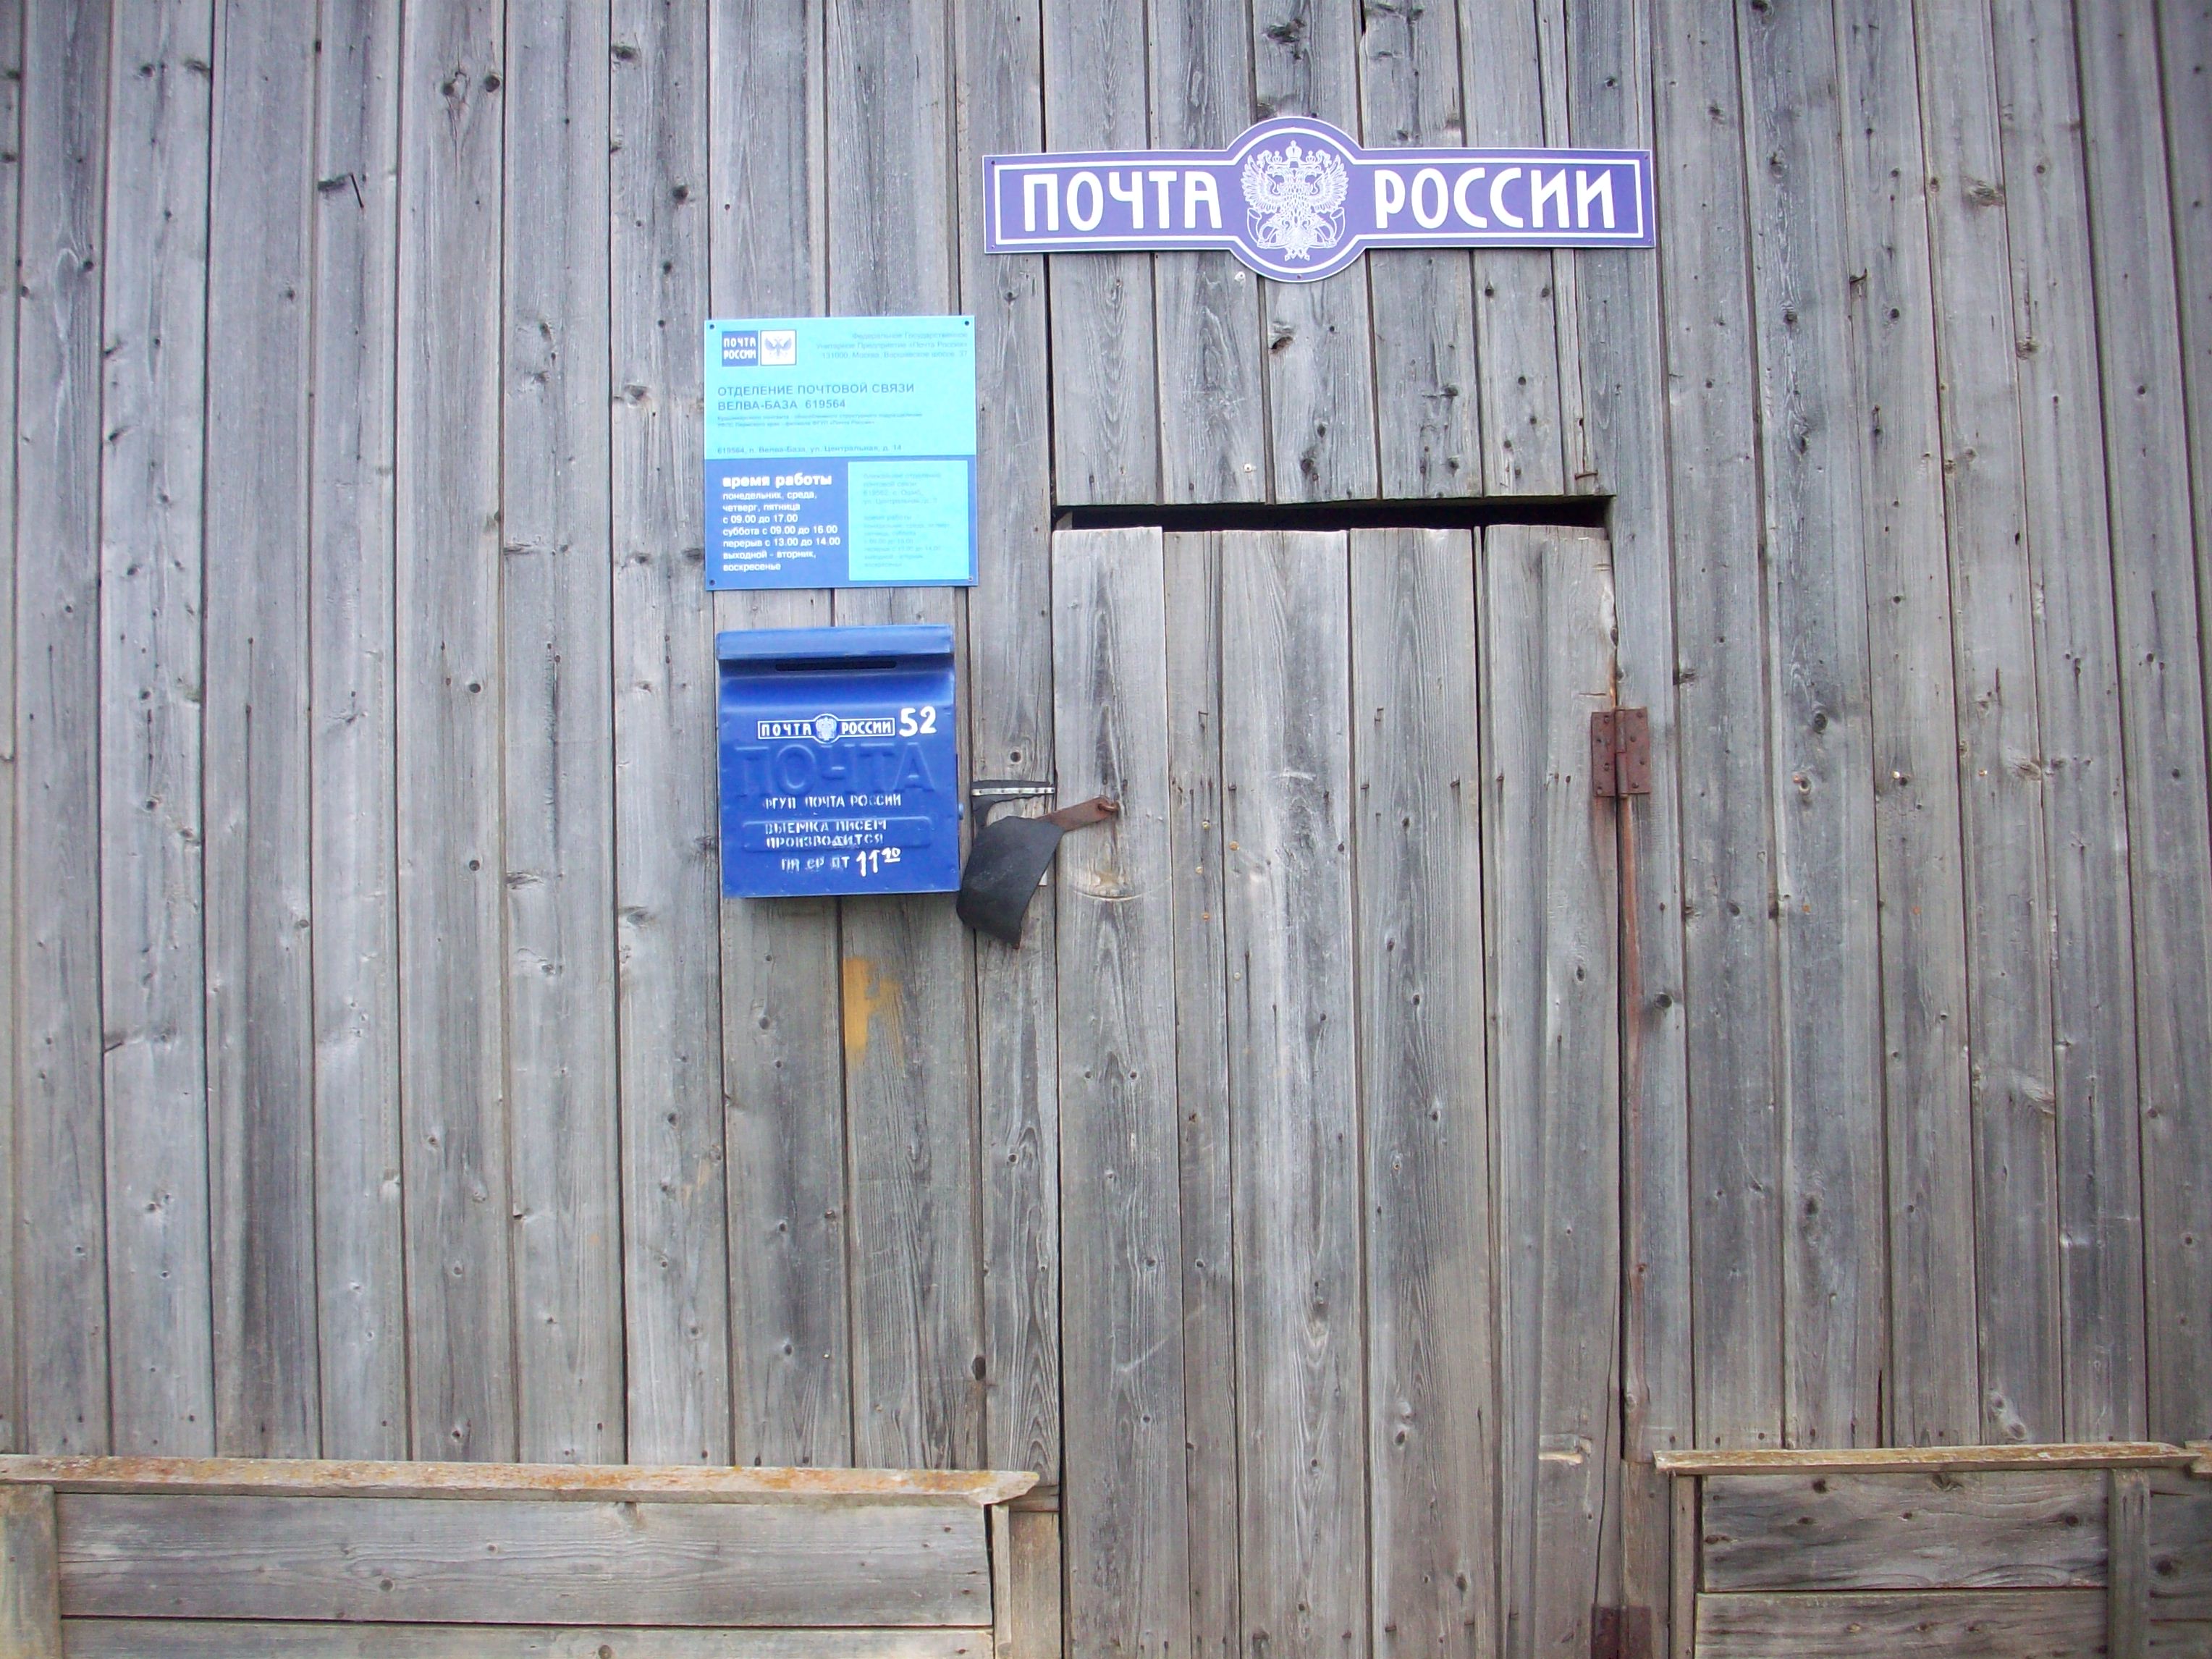 ВХОД, отделение почтовой связи 619564, Пермский край, Коми-Пермяцкий окр.